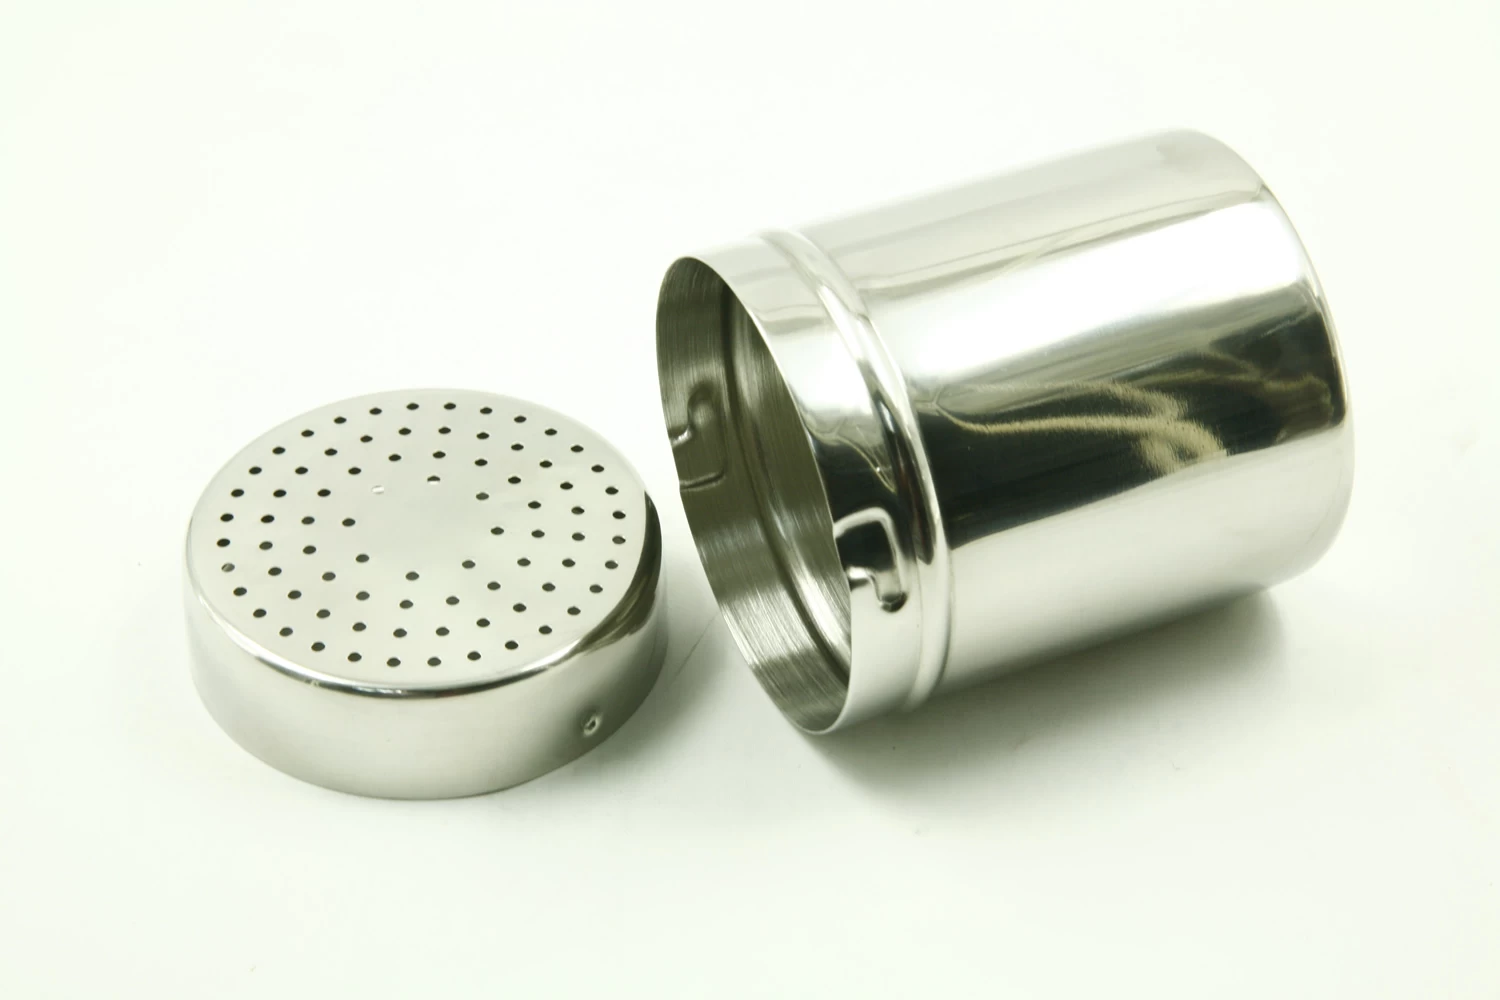 Stainless steel Spice Dredger Pepper Shaker Condiment Dispenser